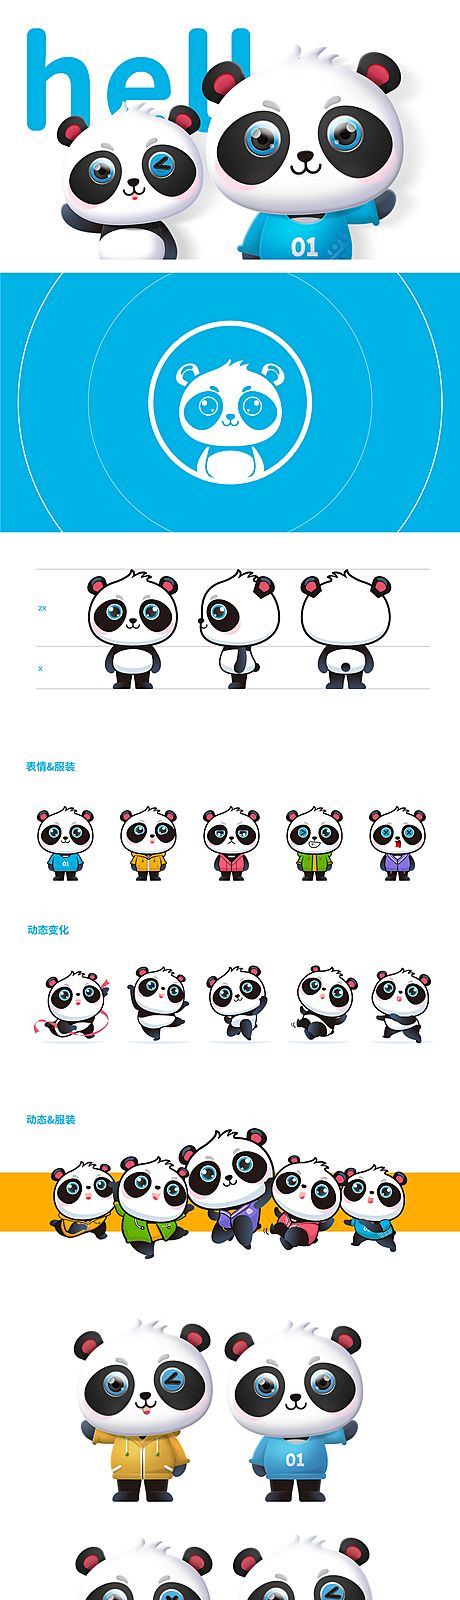 仙图网-运动熊猫ip形象设计